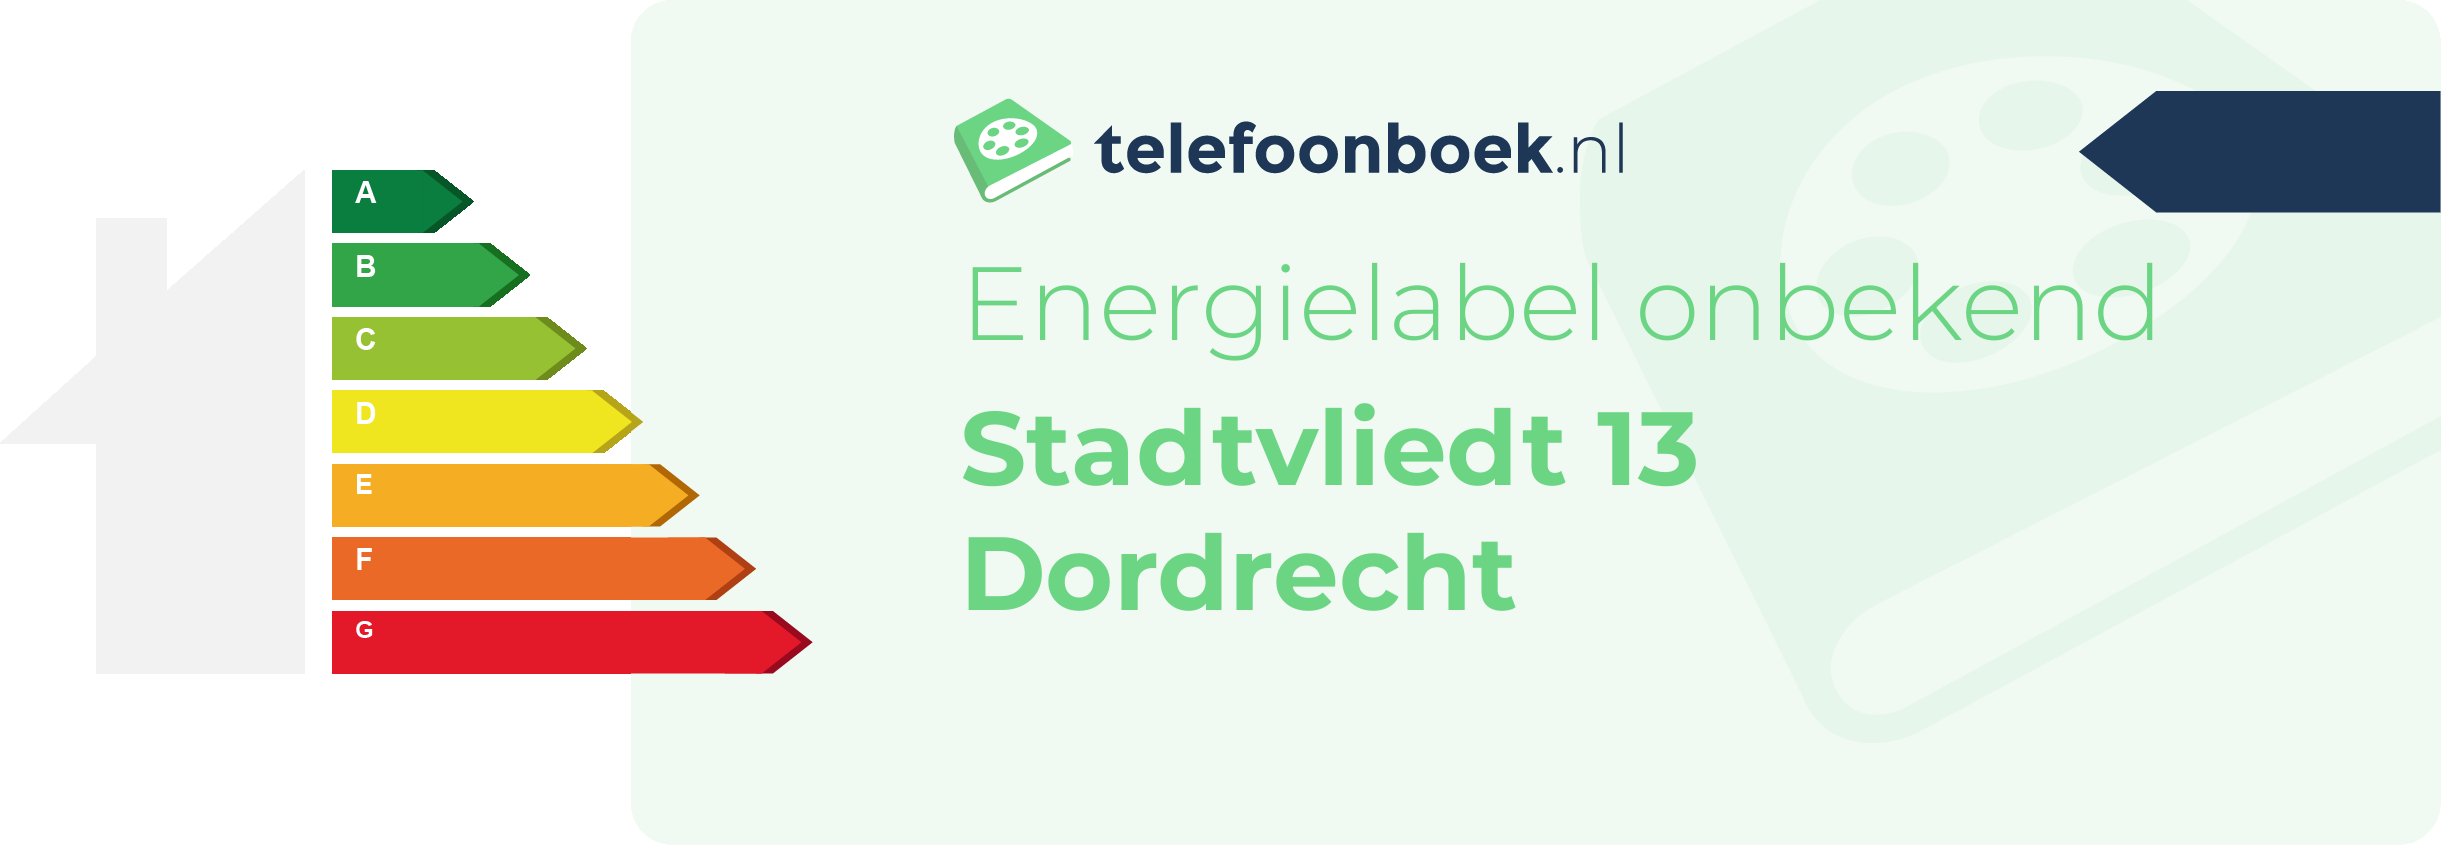 Energielabel Stadtvliedt 13 Dordrecht